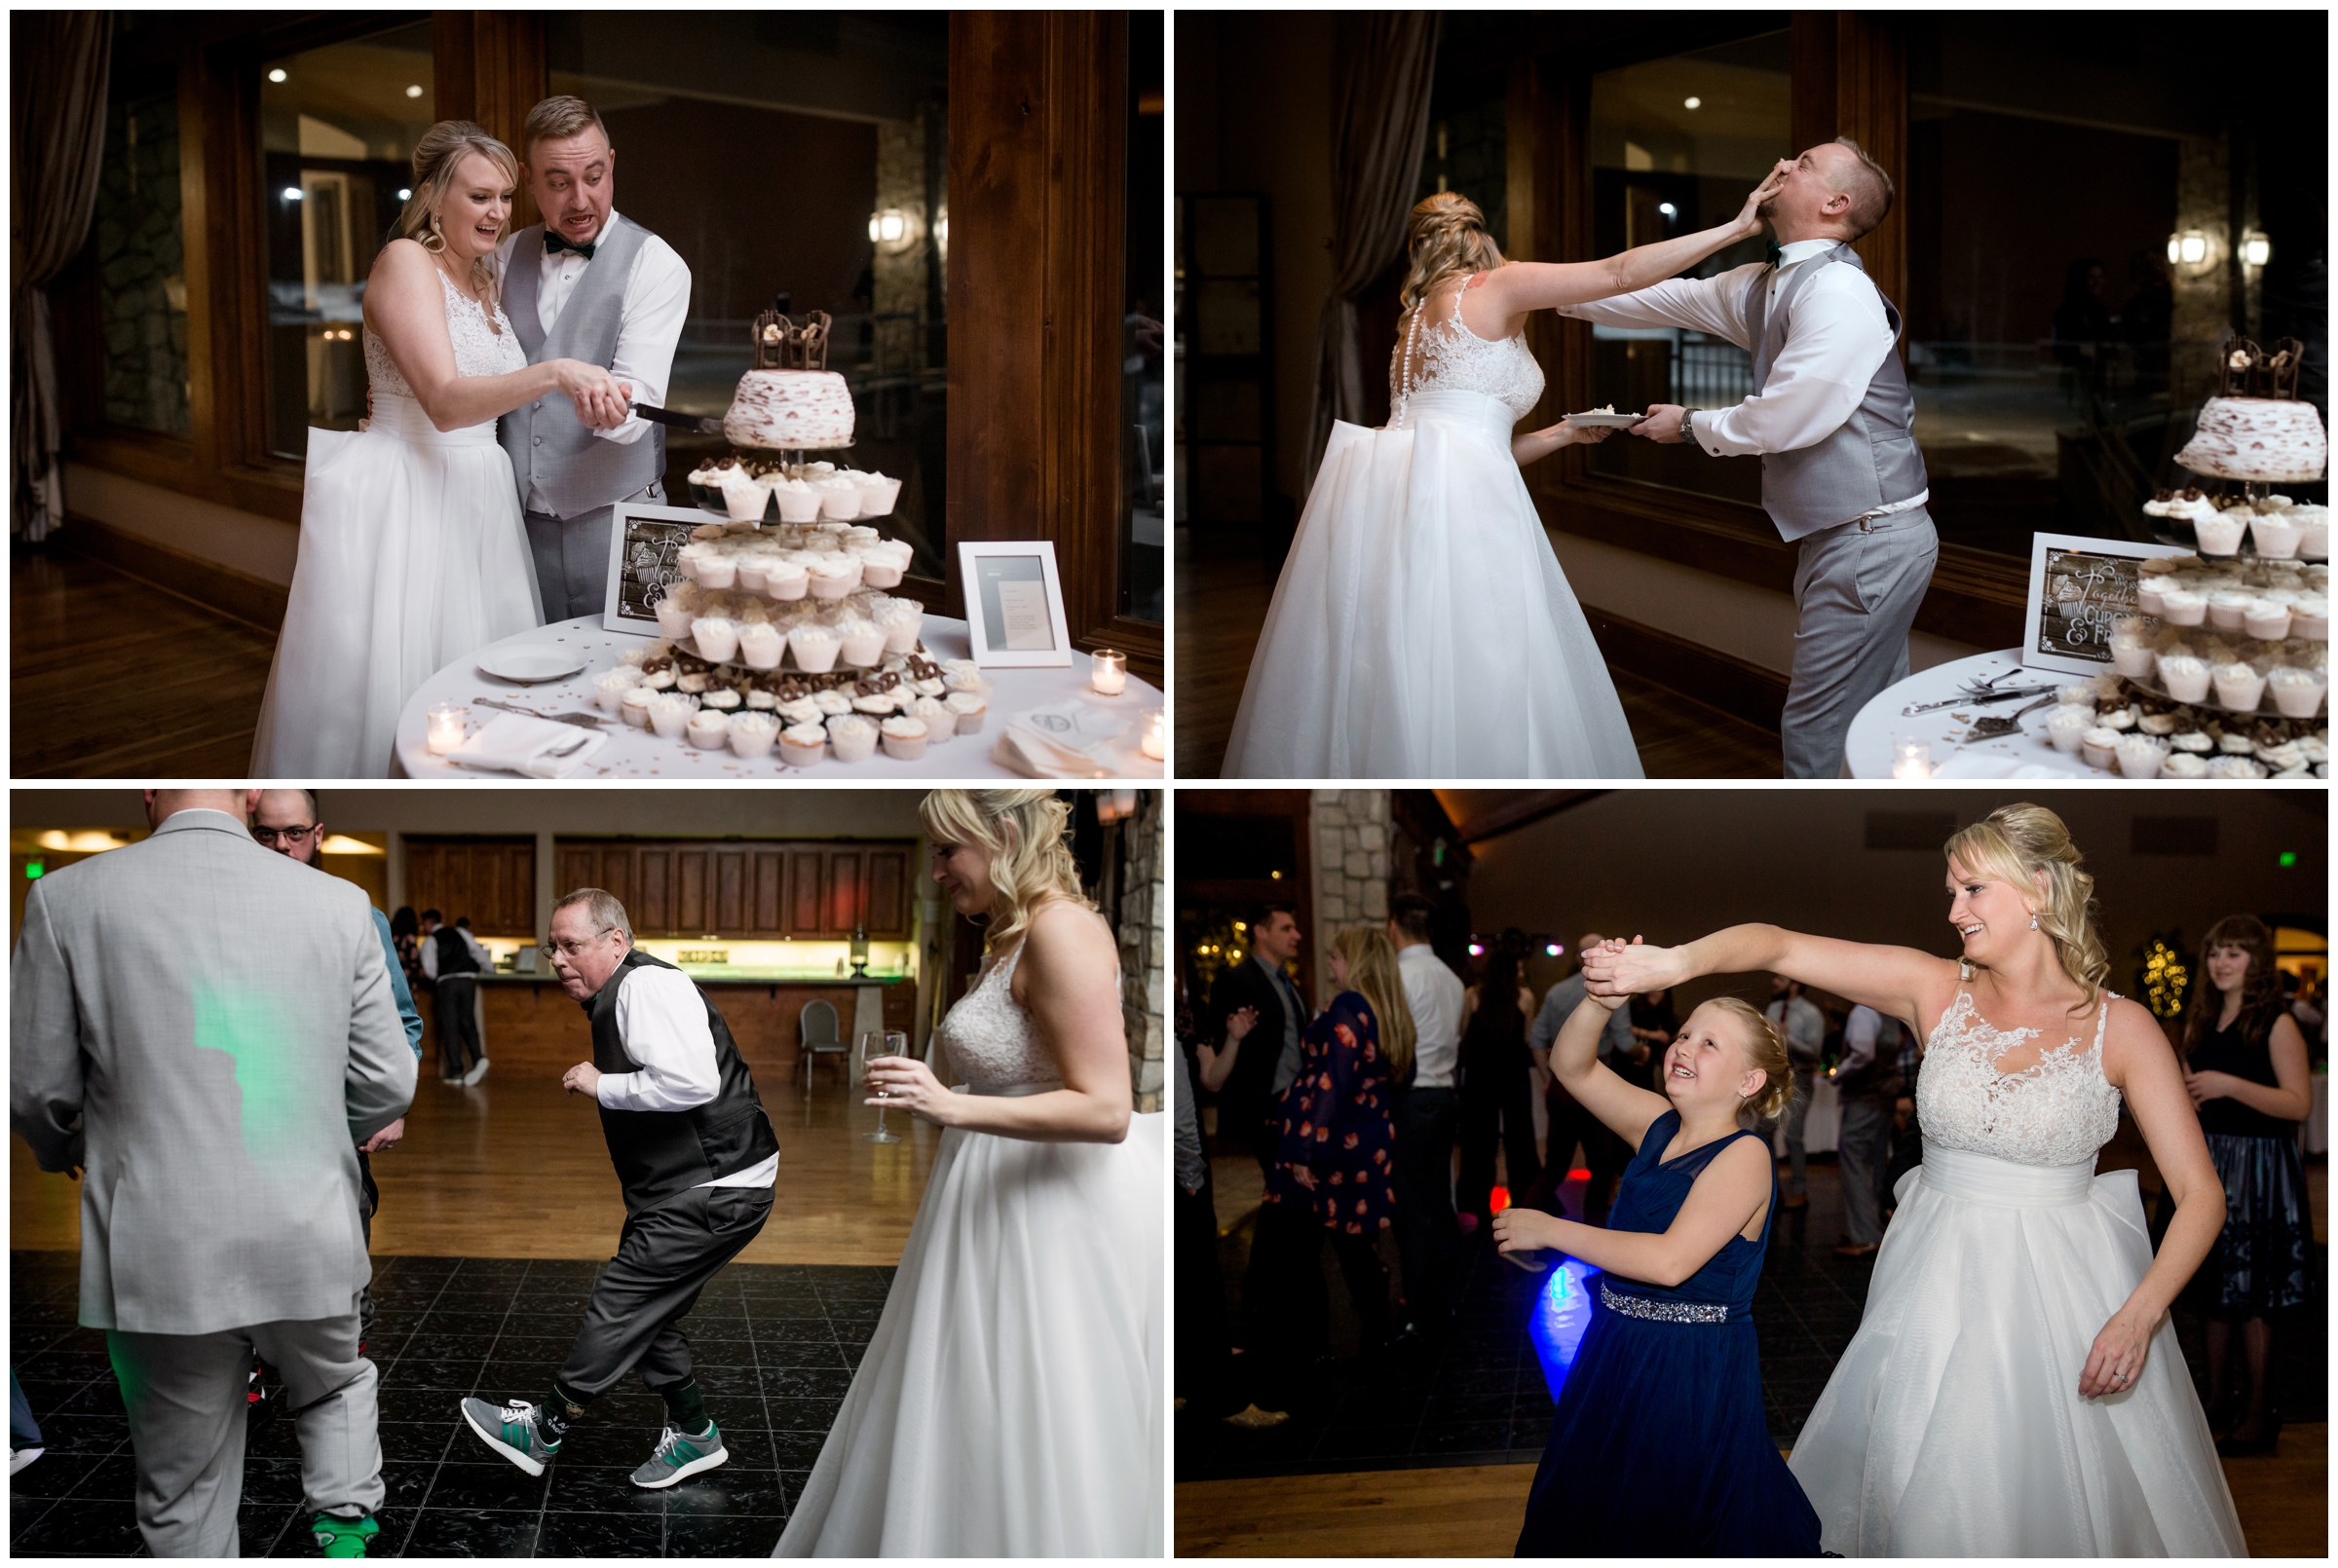 bride smashing cake in groom's face at Colorado winter wedding reception 